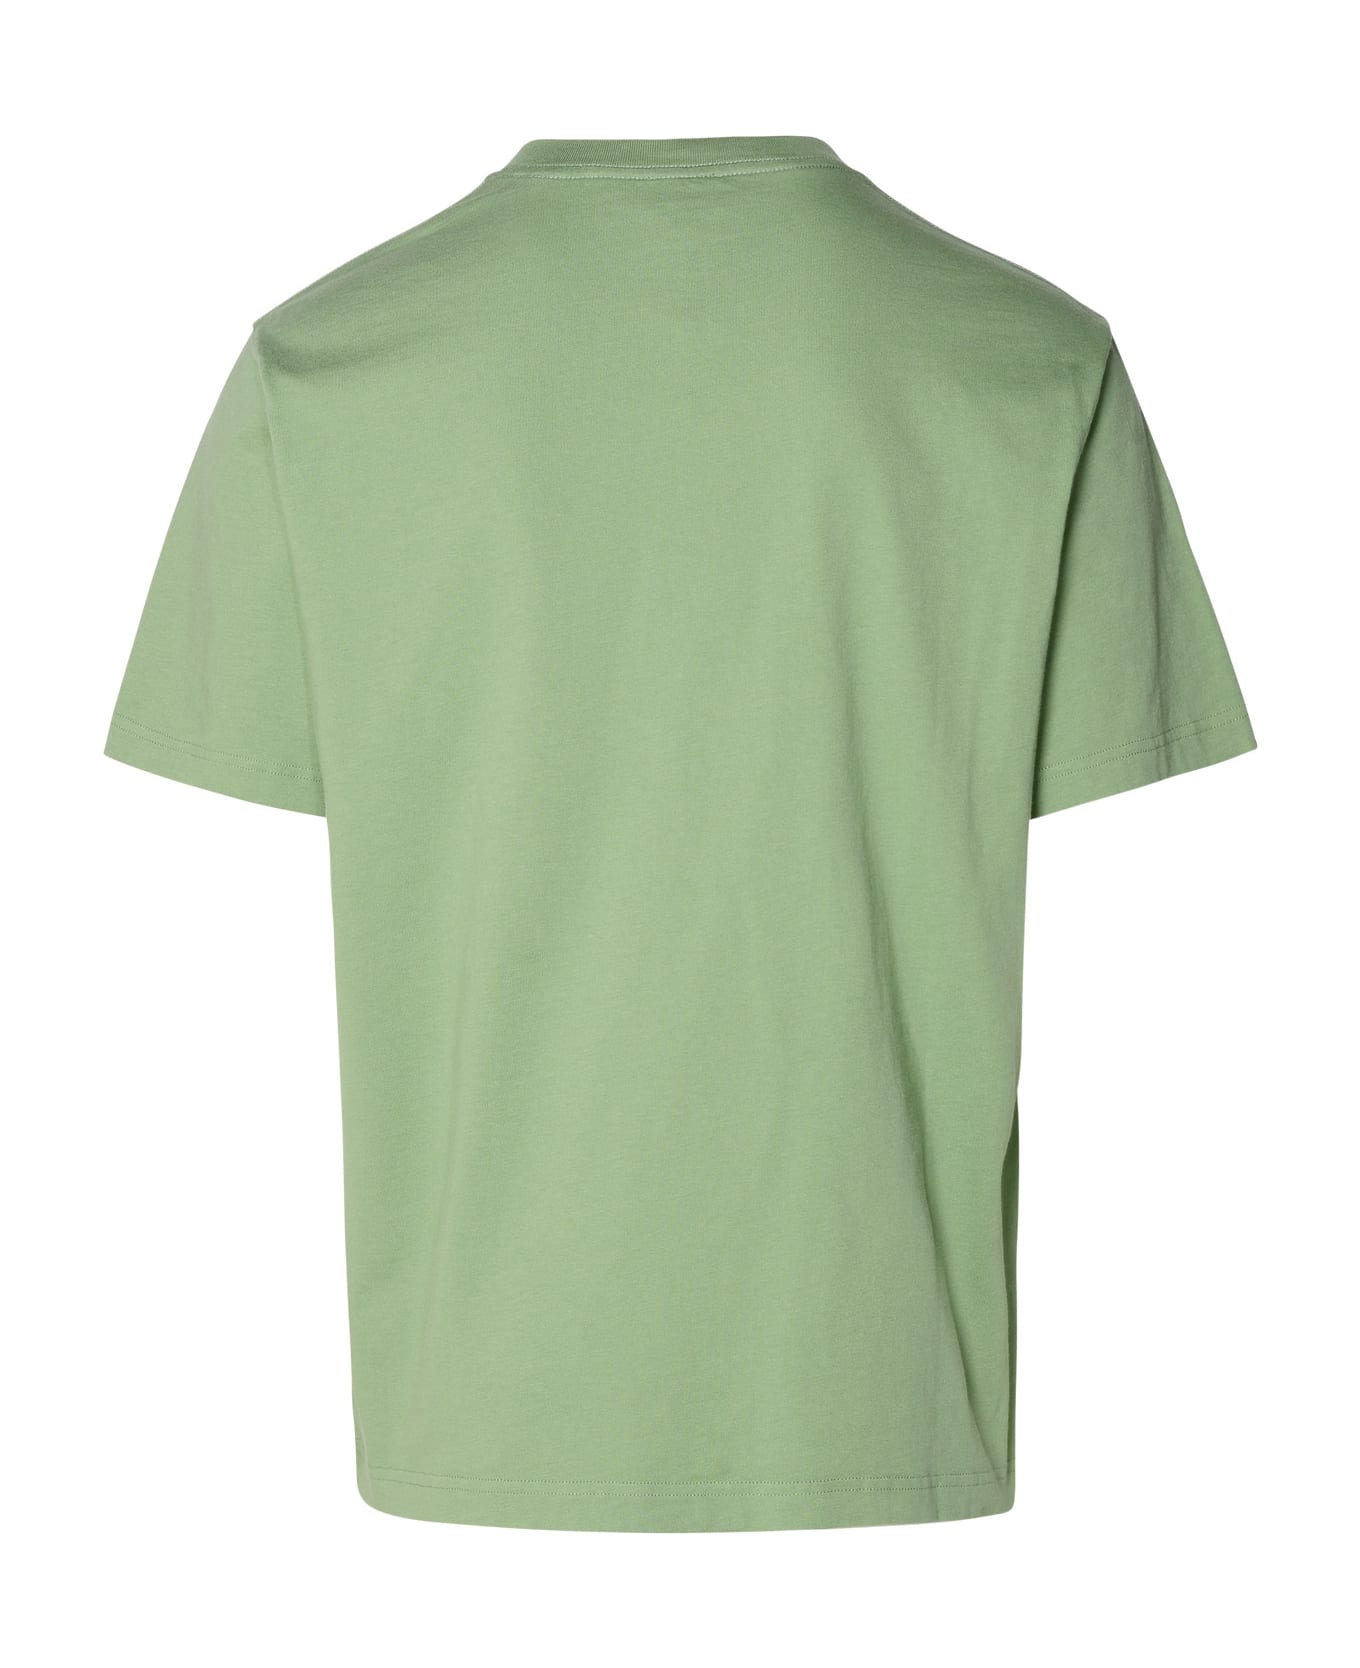 Kenzo Green Cotton T-shirt - Green